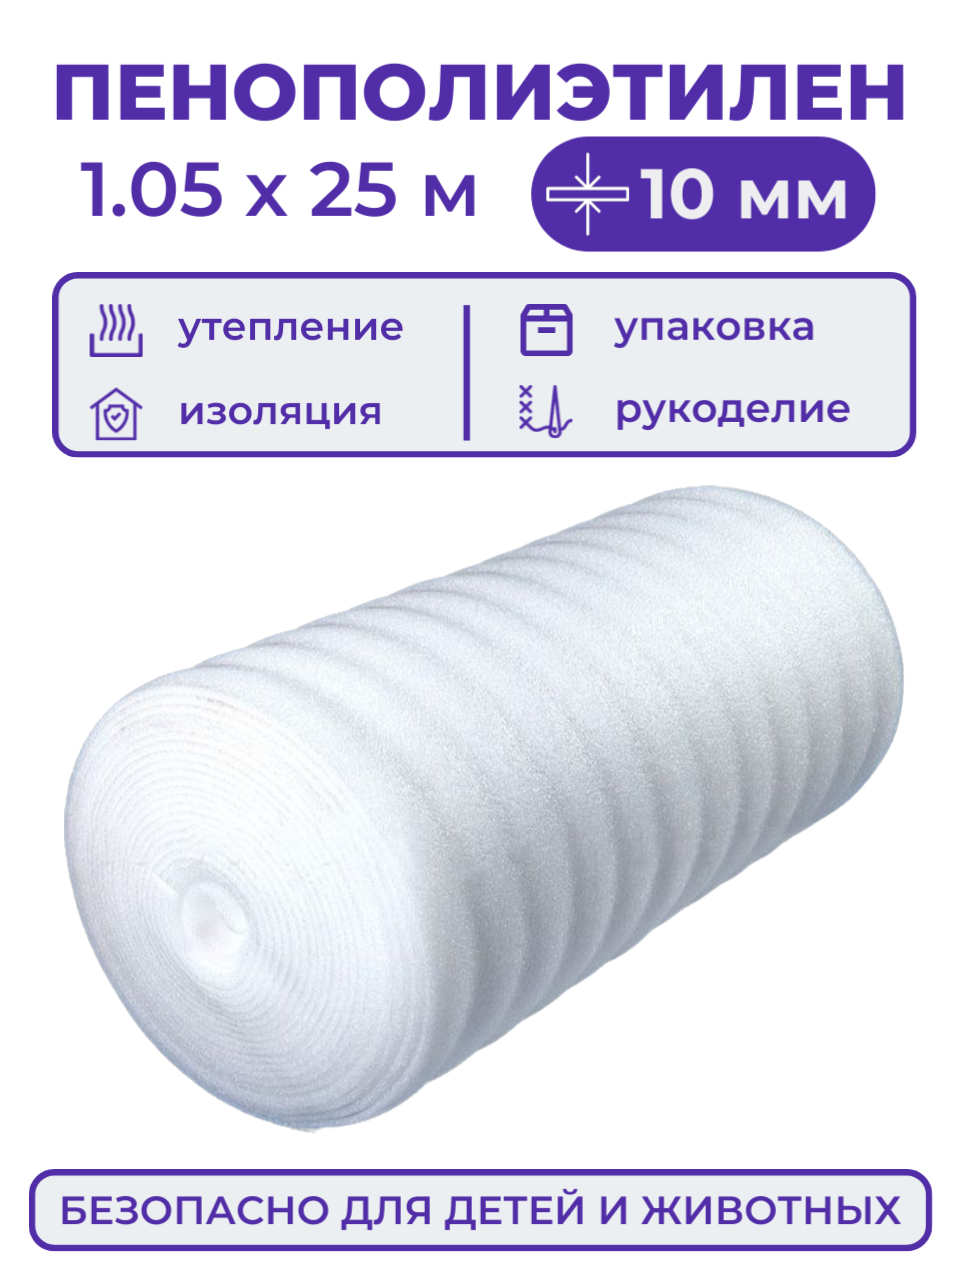 Вспененный полиэтилен 10 мм, рулон 1.05х25 м (26.25 м2), пенополиэтилен утеплитель подложка под ковер или ламинат, теплоизоляция для теплого пола